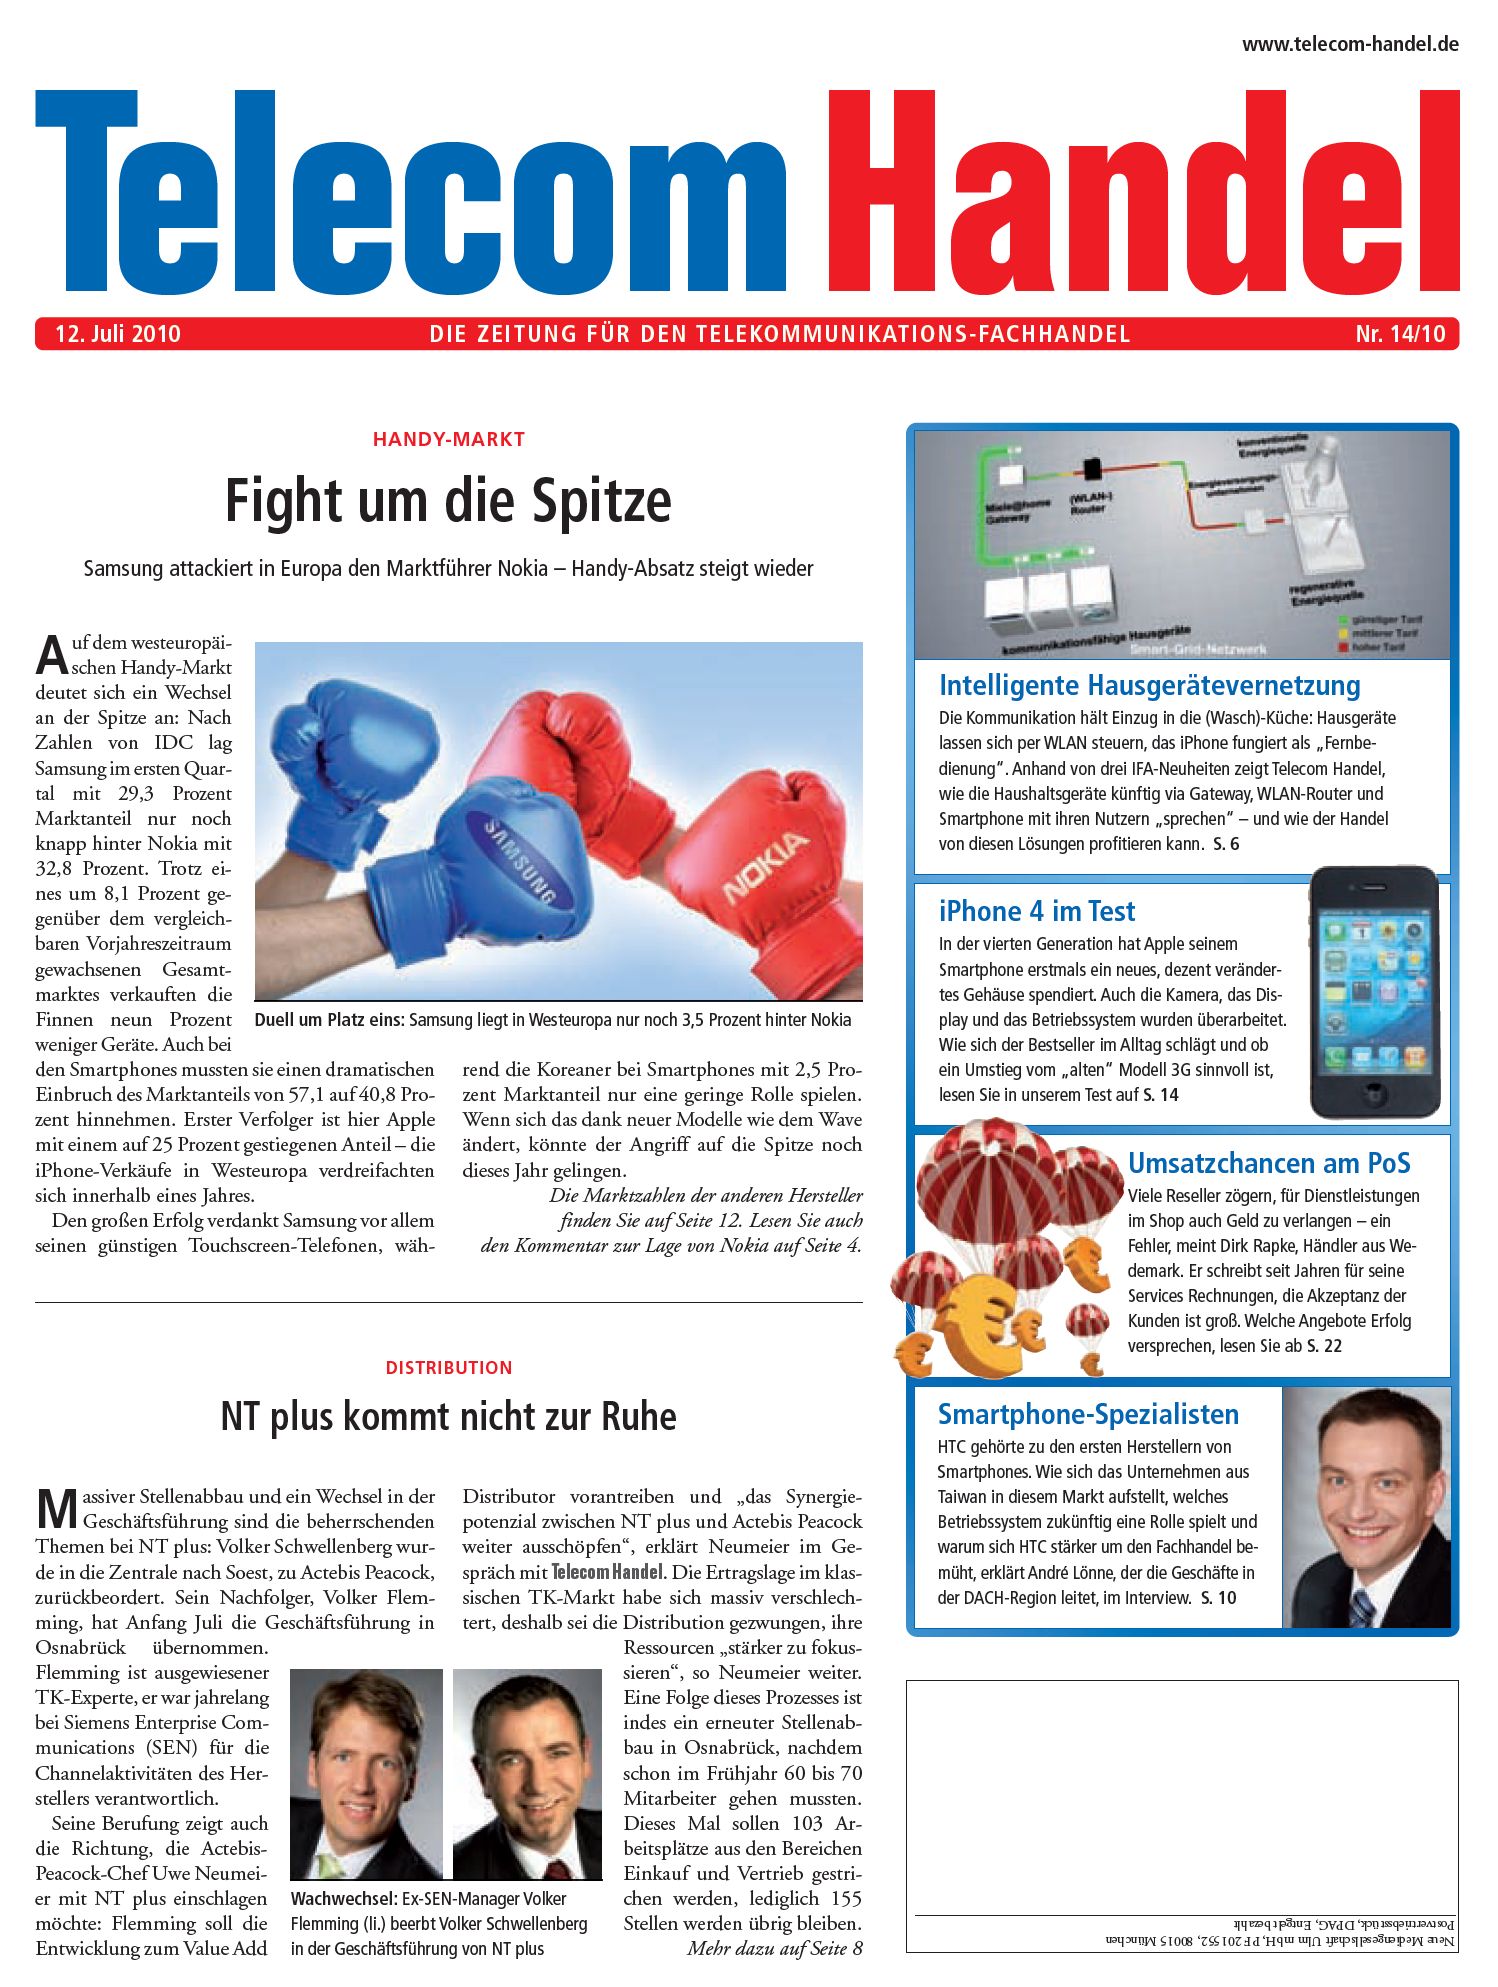 Telecom Handel Ausgabe 14/2010